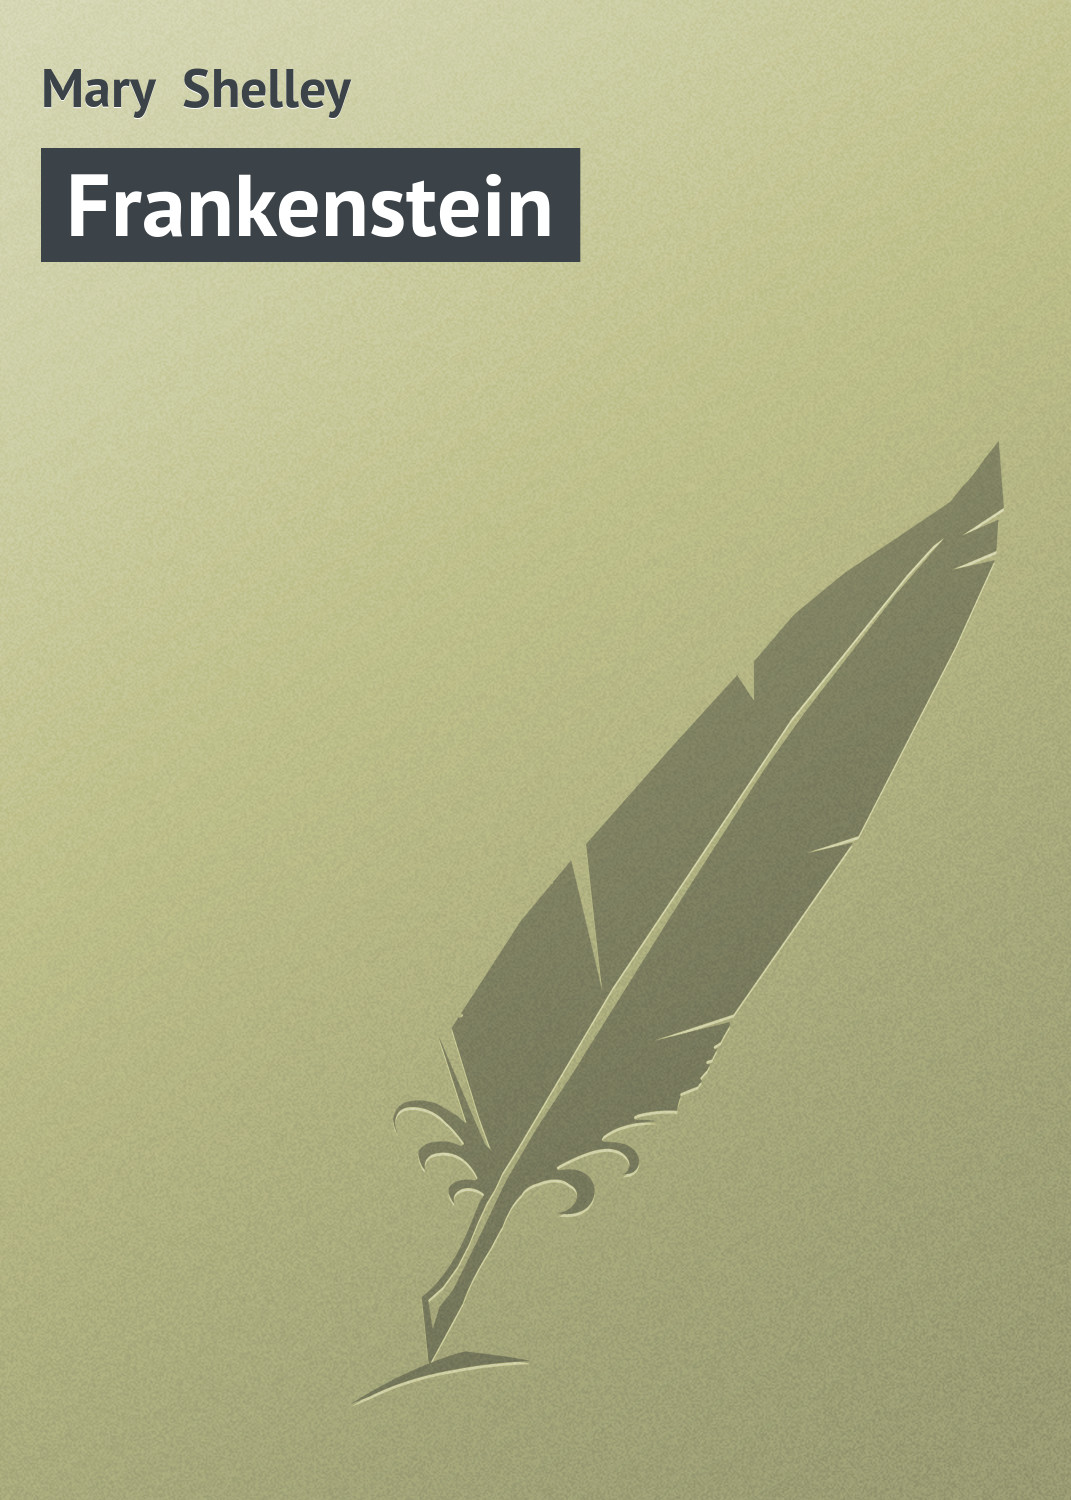 Книга Frankenstein из серии , созданная Mary Shelley, может относится к жанру Зарубежная старинная литература, Зарубежная классика. Стоимость электронной книги Frankenstein с идентификатором 21103638 составляет 5.99 руб.